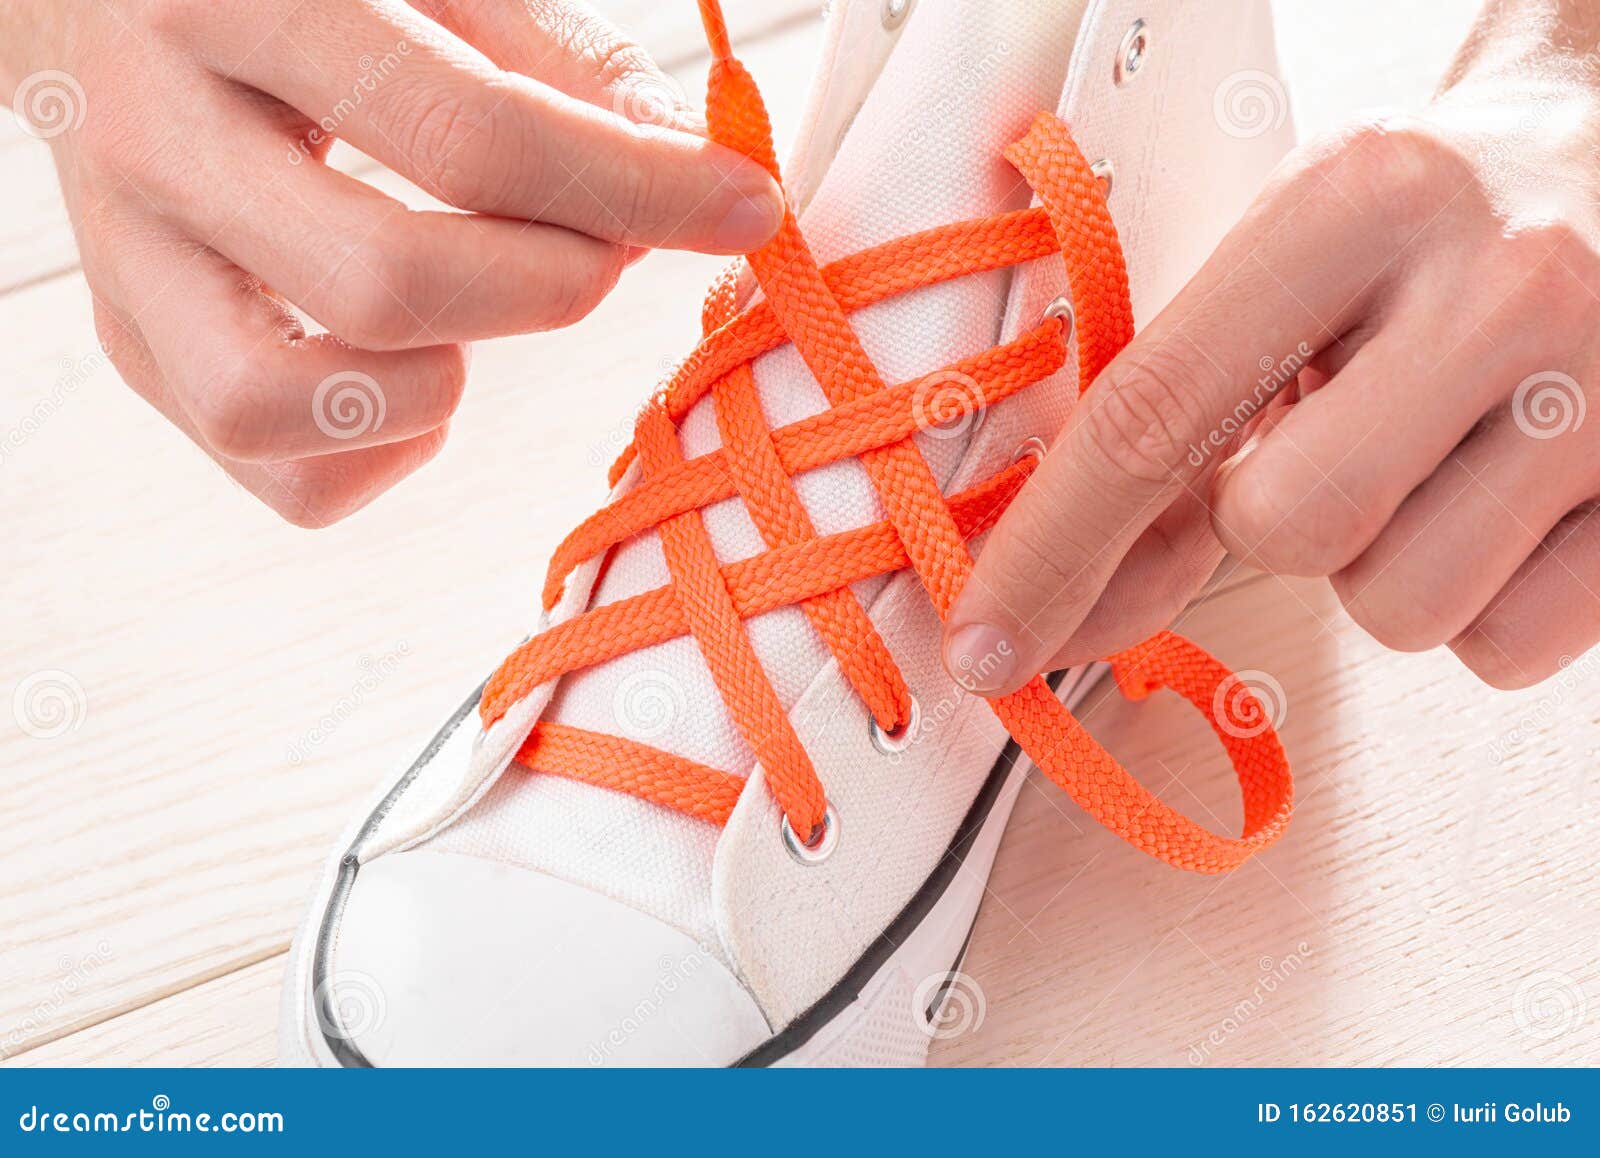 creative shoe tying